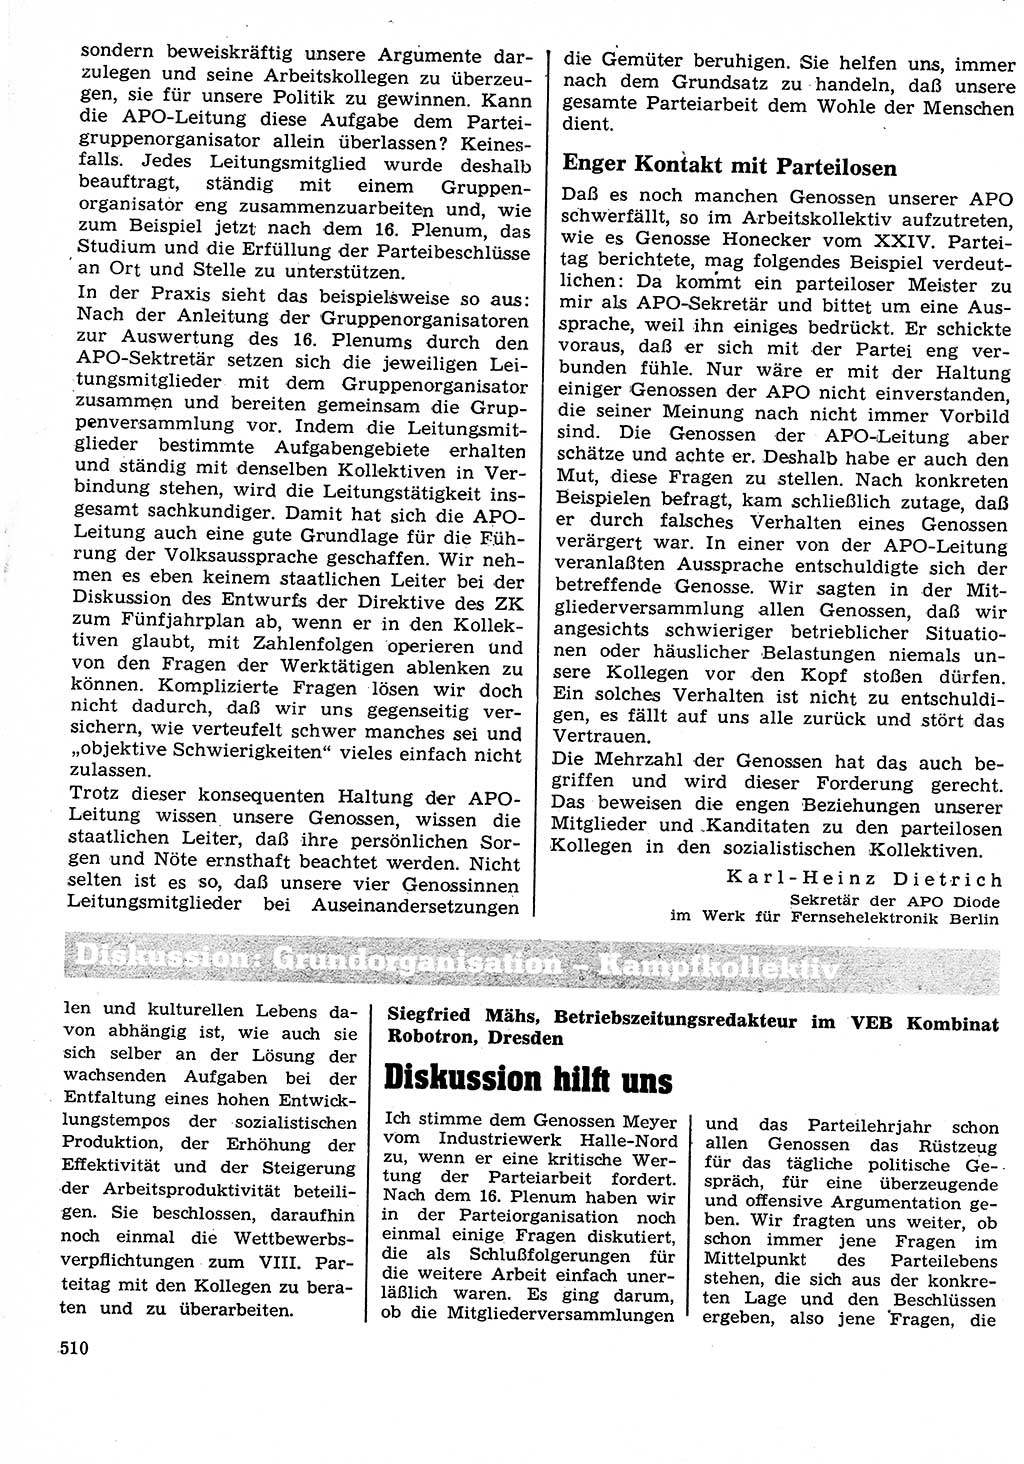 Neuer Weg (NW), Organ des Zentralkomitees (ZK) der SED (Sozialistische Einheitspartei Deutschlands) für Fragen des Parteilebens, 26. Jahrgang [Deutsche Demokratische Republik (DDR)] 1971, Seite 510 (NW ZK SED DDR 1971, S. 510)